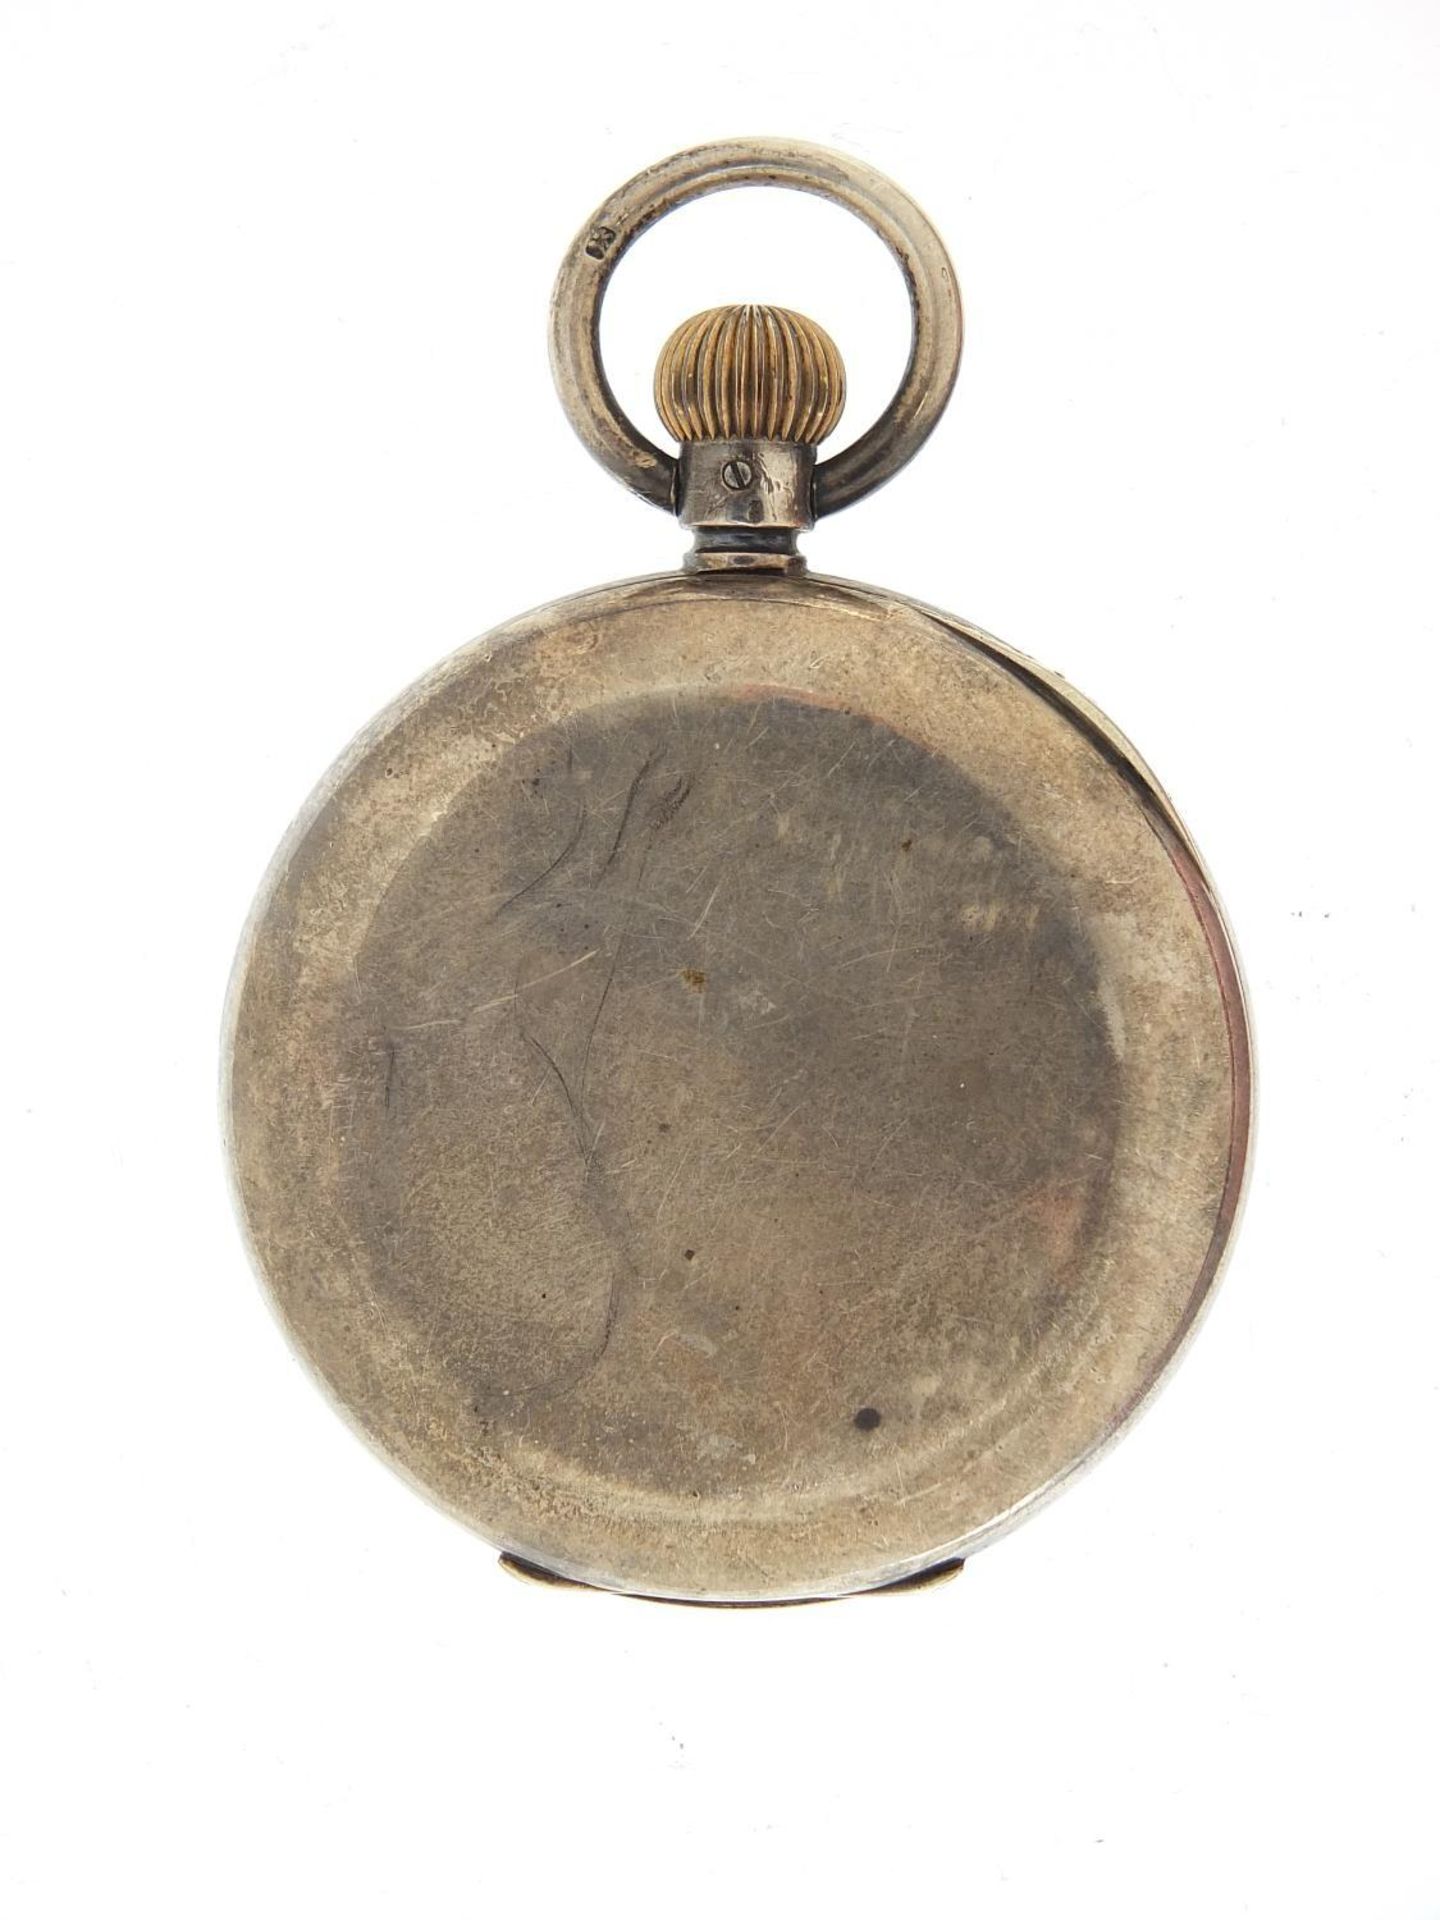 Gentlemen's silver half hunter pocket watch with enamel dial, 49mm in diameter - Image 4 of 5